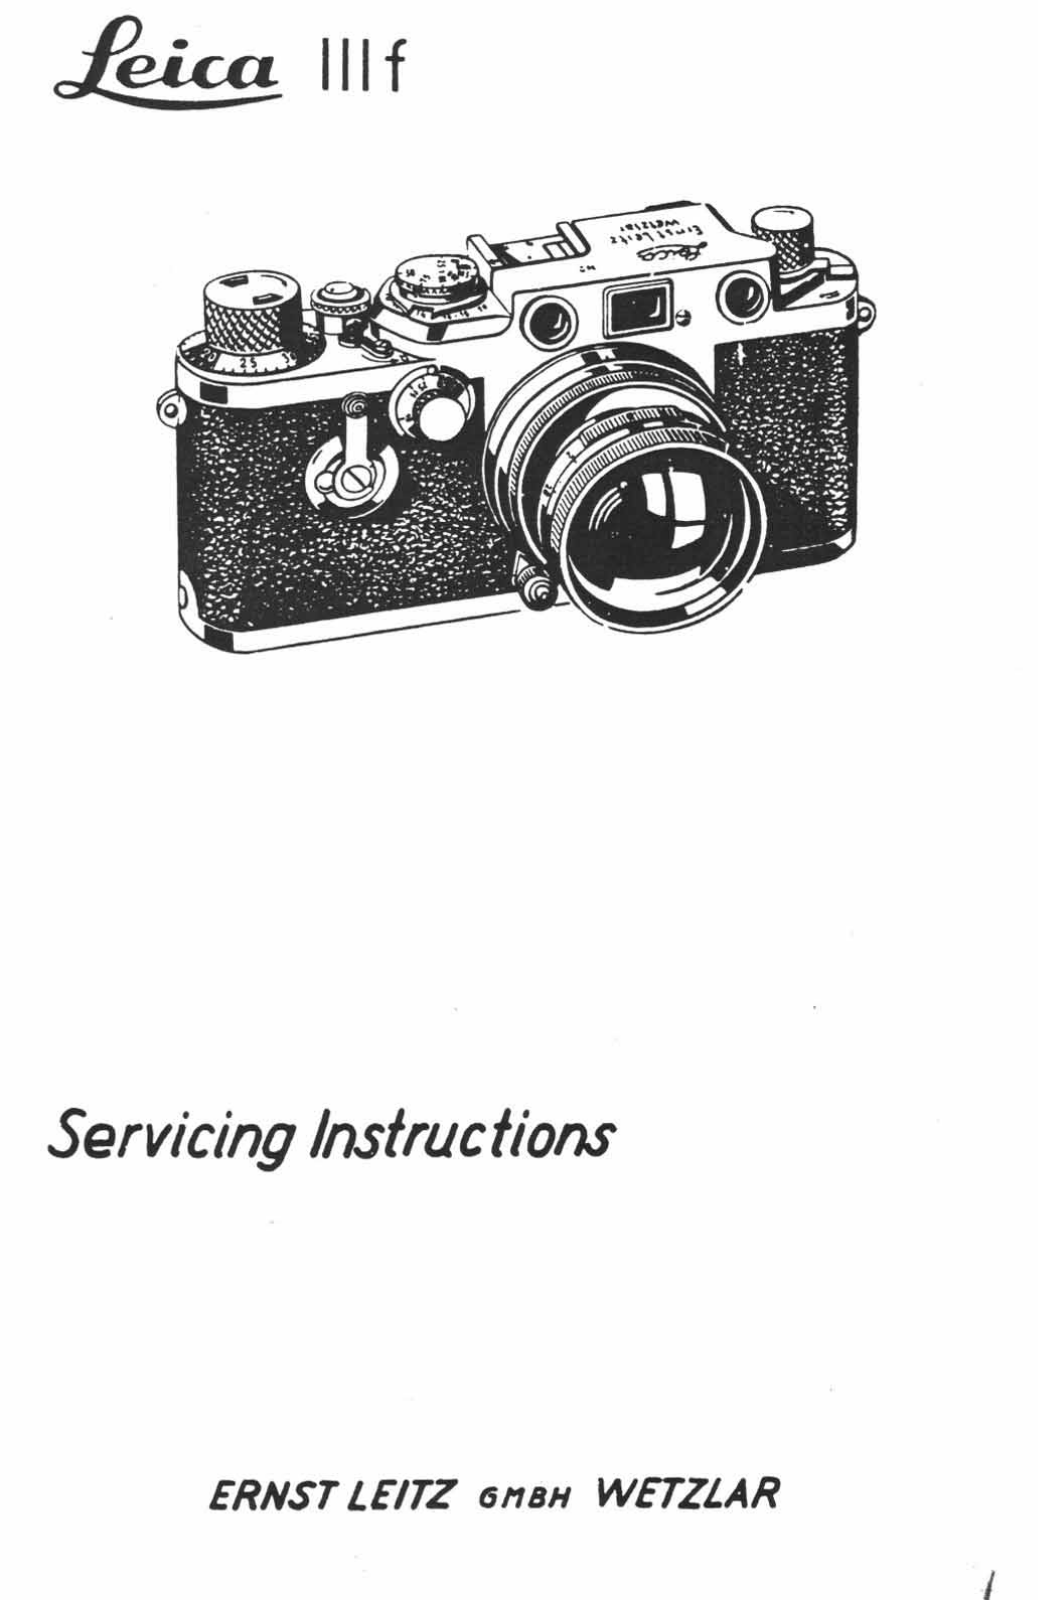 Leica IIIF Repair Manual